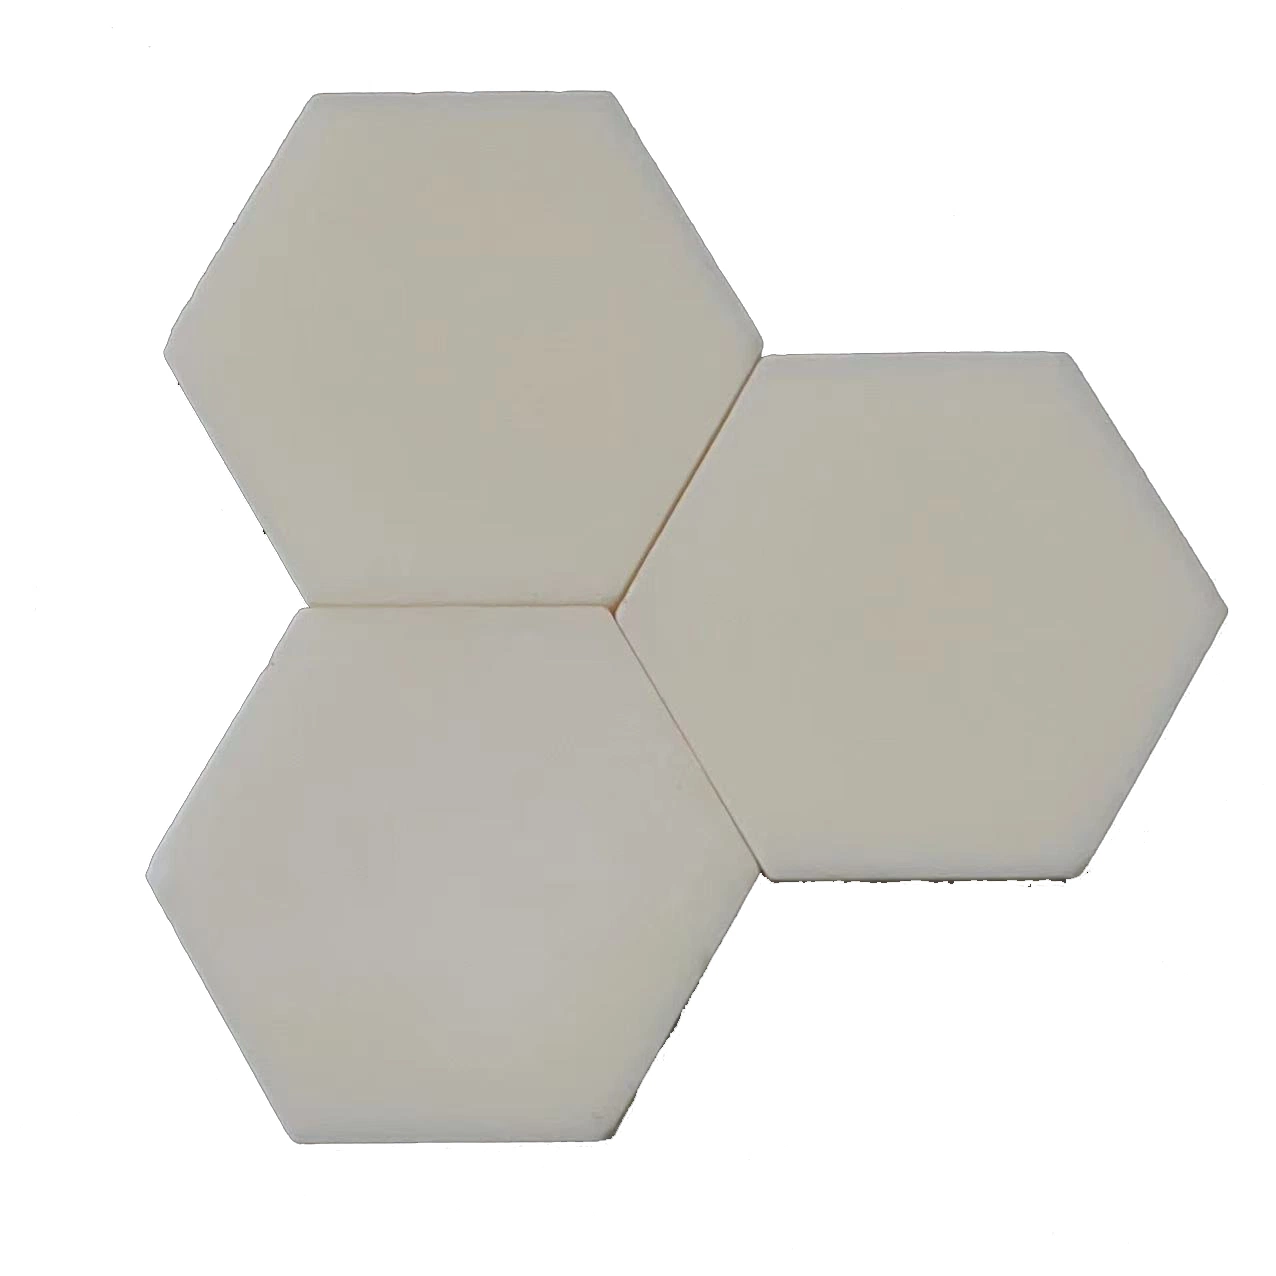 Weiß 99% Verschleißschutz Aluminiumoxid Lining Keramikplatte für Militär Einheitlich